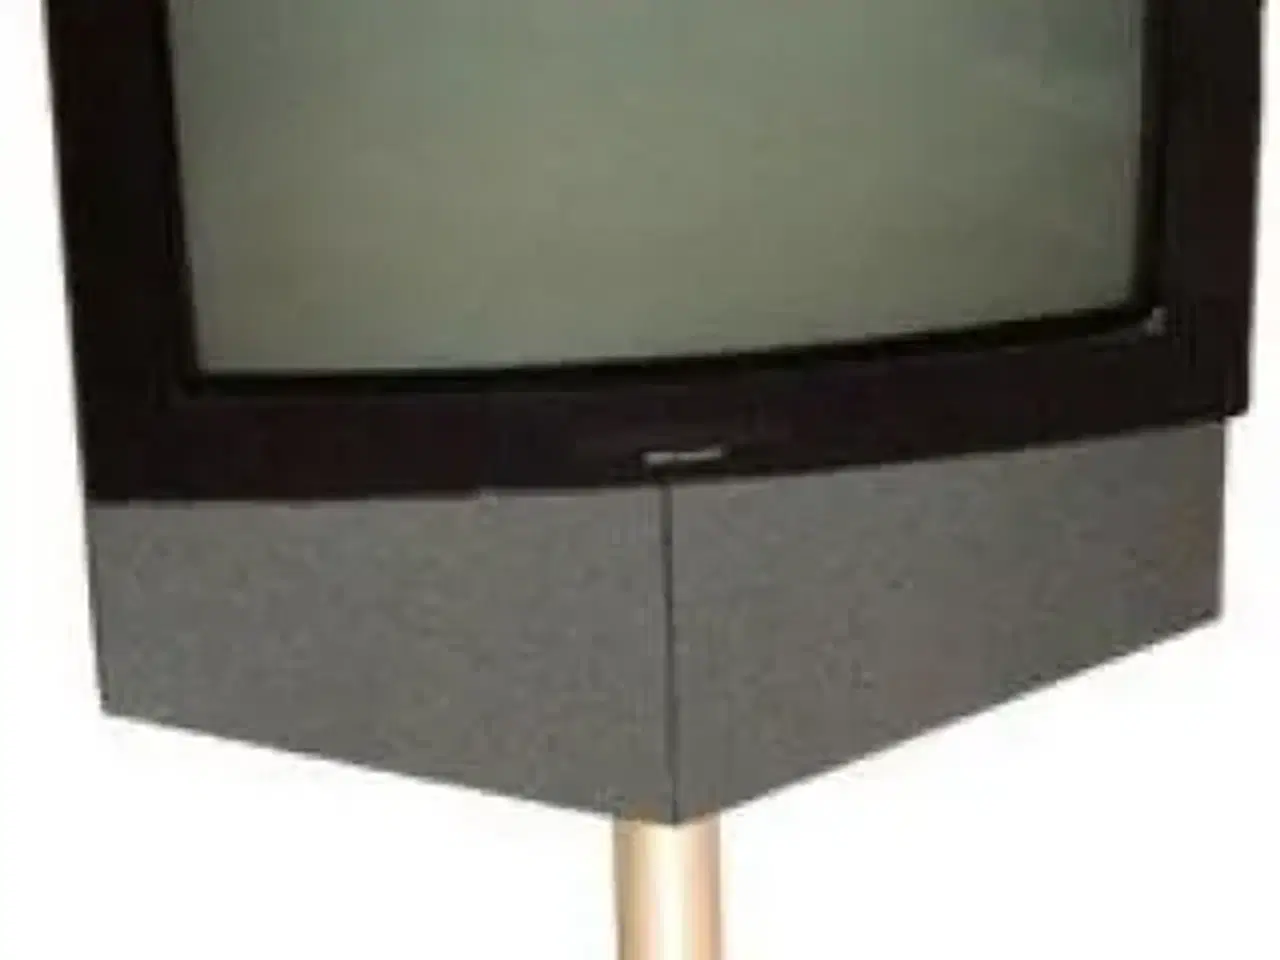 Billede 1 - Ikonisk TV med radio og dvd uden fjernbetjening.